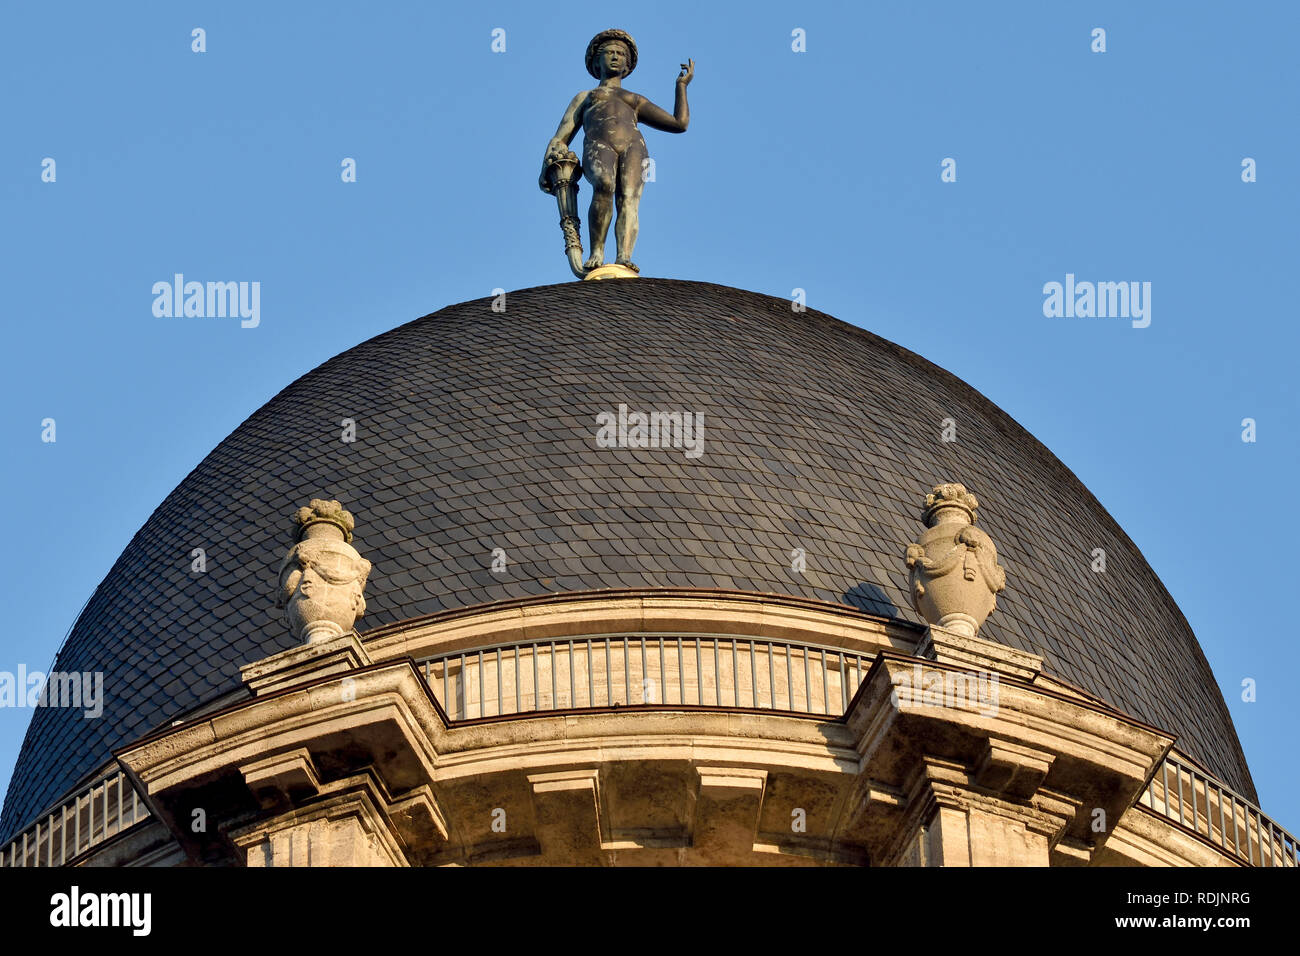 Berlino, Germania - 11 novembre 2018. Cupola di Altes Stadthaus (Vecchio Municipio) edificio di Berlino, con vasi e un 3,25 metri scultura in rame del Foto Stock